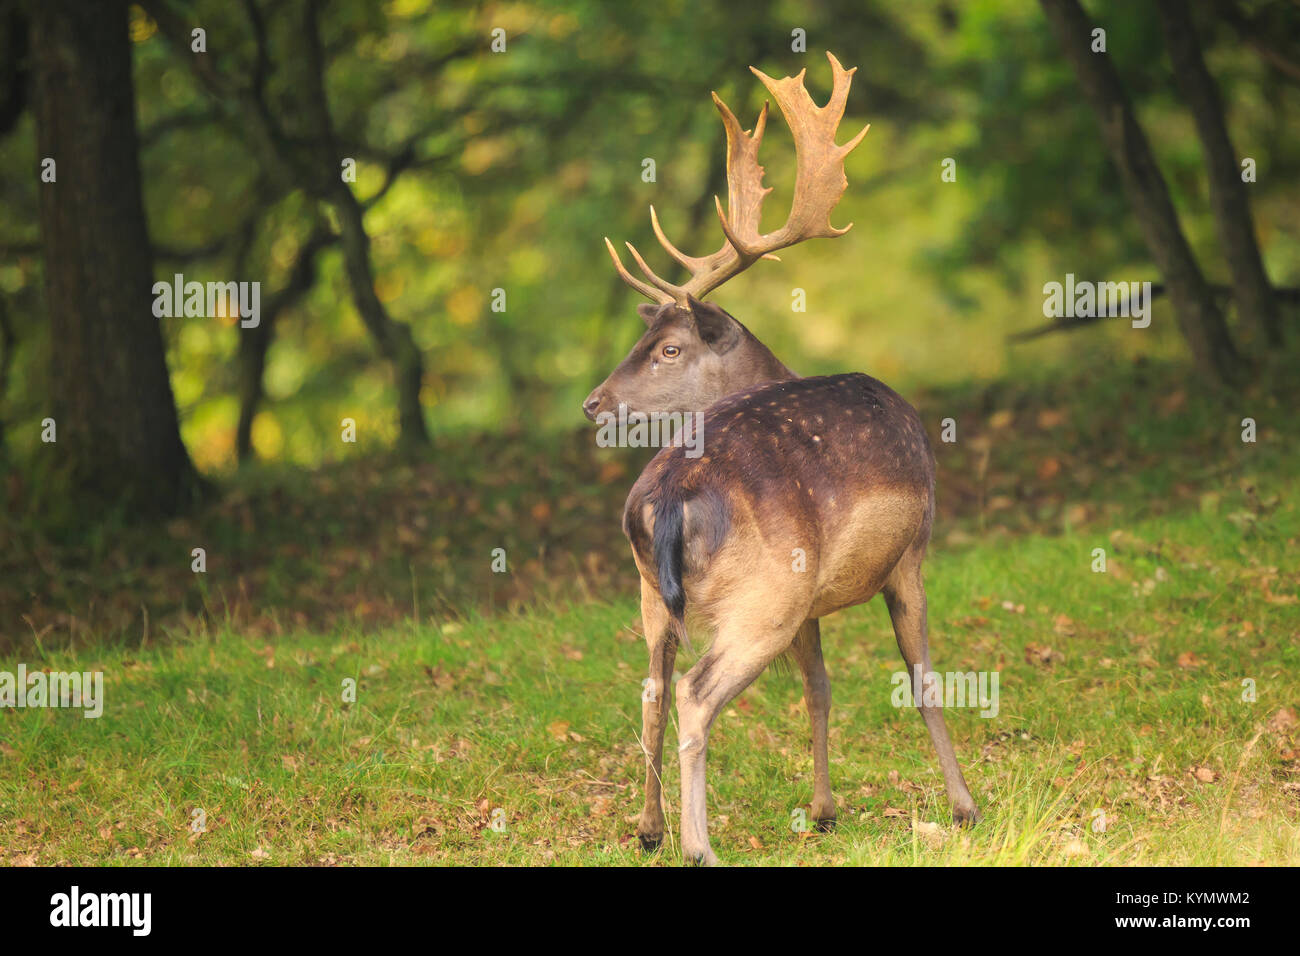 Close up portrait of a male fallow deer stag, Dama Dama, debout dans une forêt verte pendant la saison d'automne. Banque D'Images